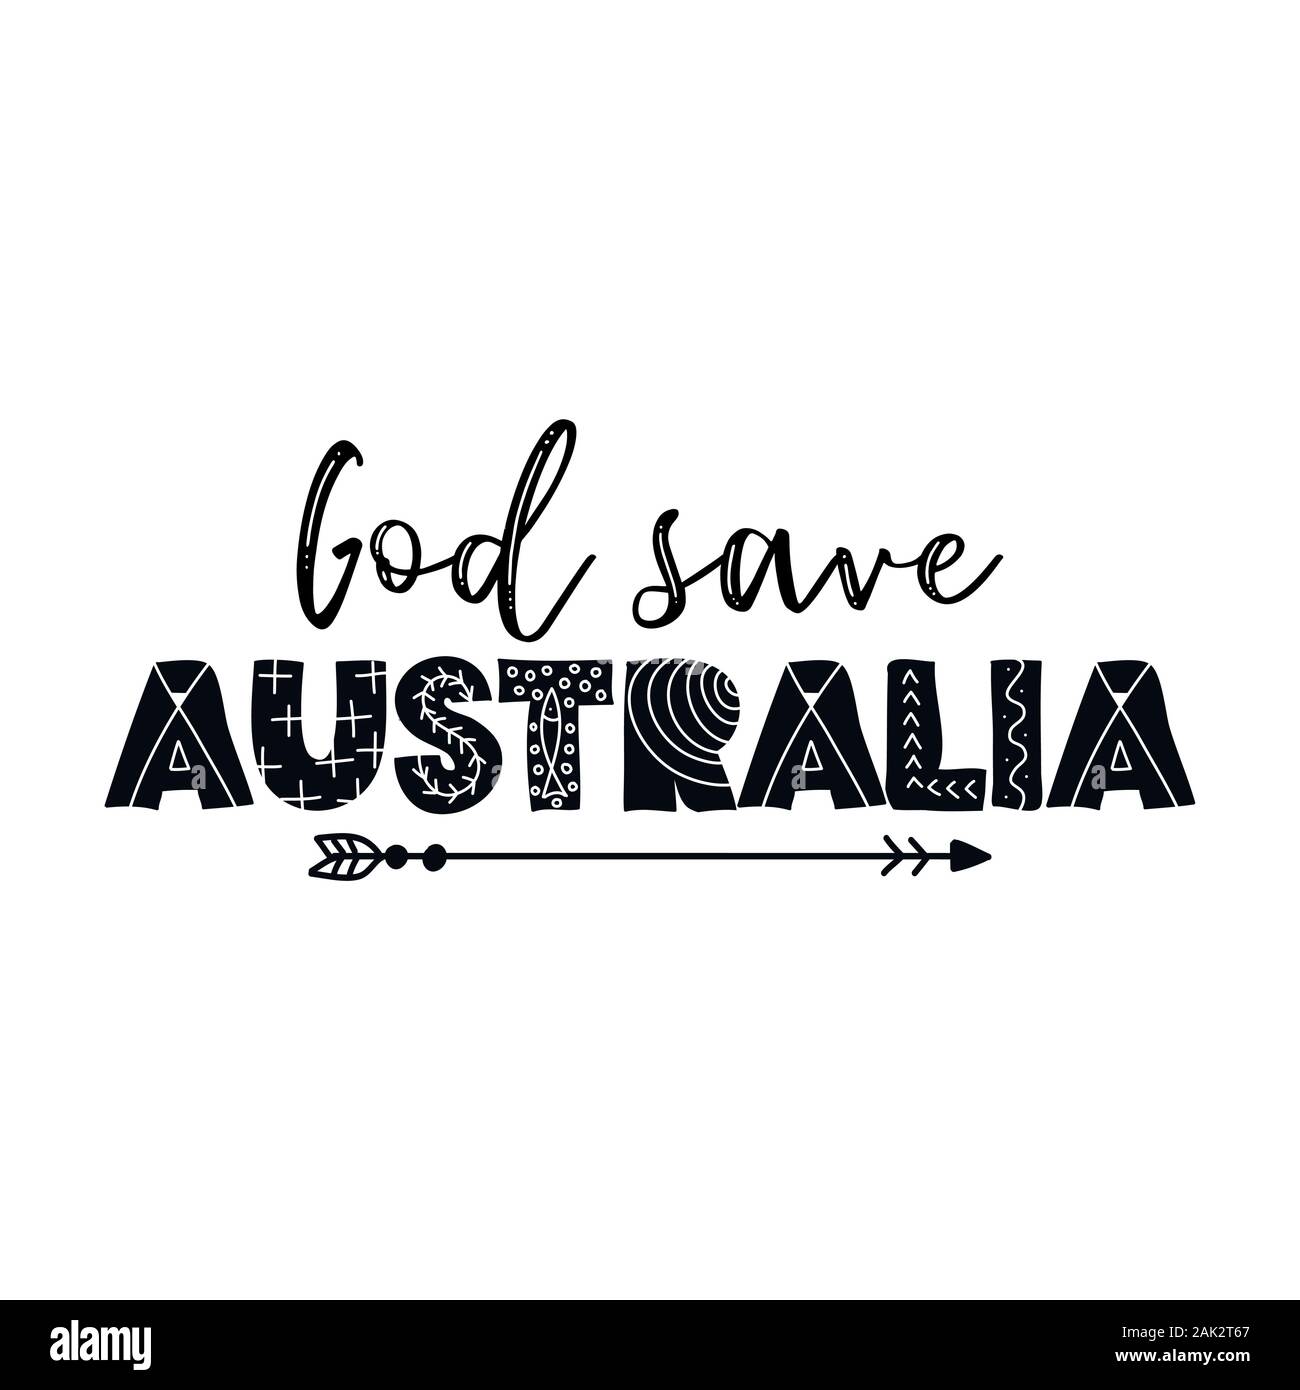 Gott speichern Australien - Australien und australischen Volk in ihre harte Zeit. Rekordverdächtige Temperaturen und Monate der Dürre haben Fuelle Stock Vektor